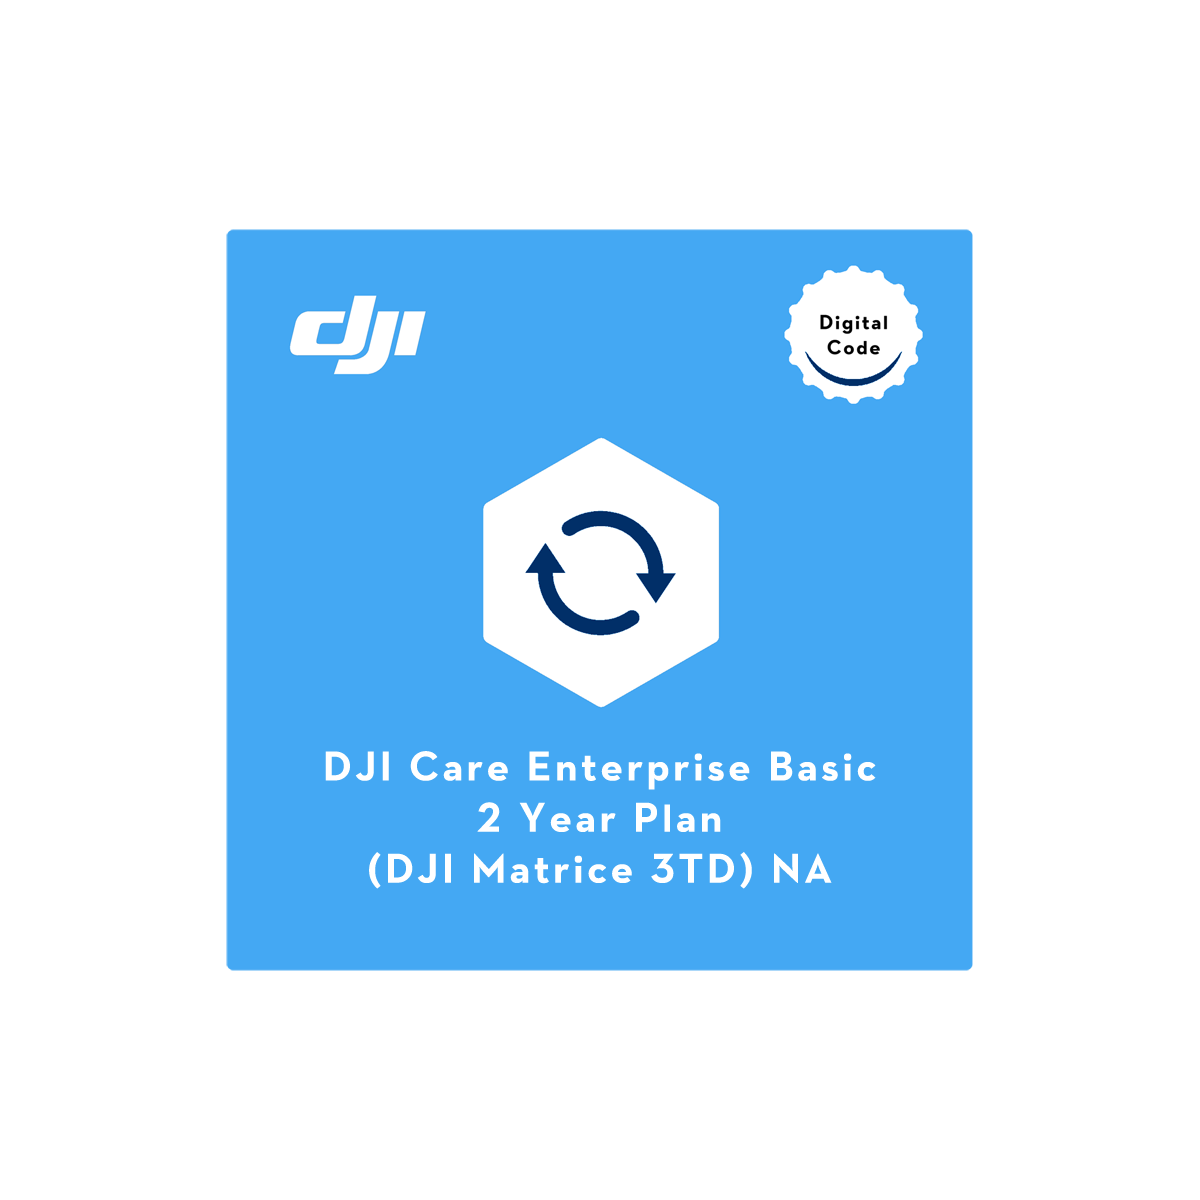 DJI Care Enterprise Basic 2-Year Plan (DJI Matrice 3TD) NA